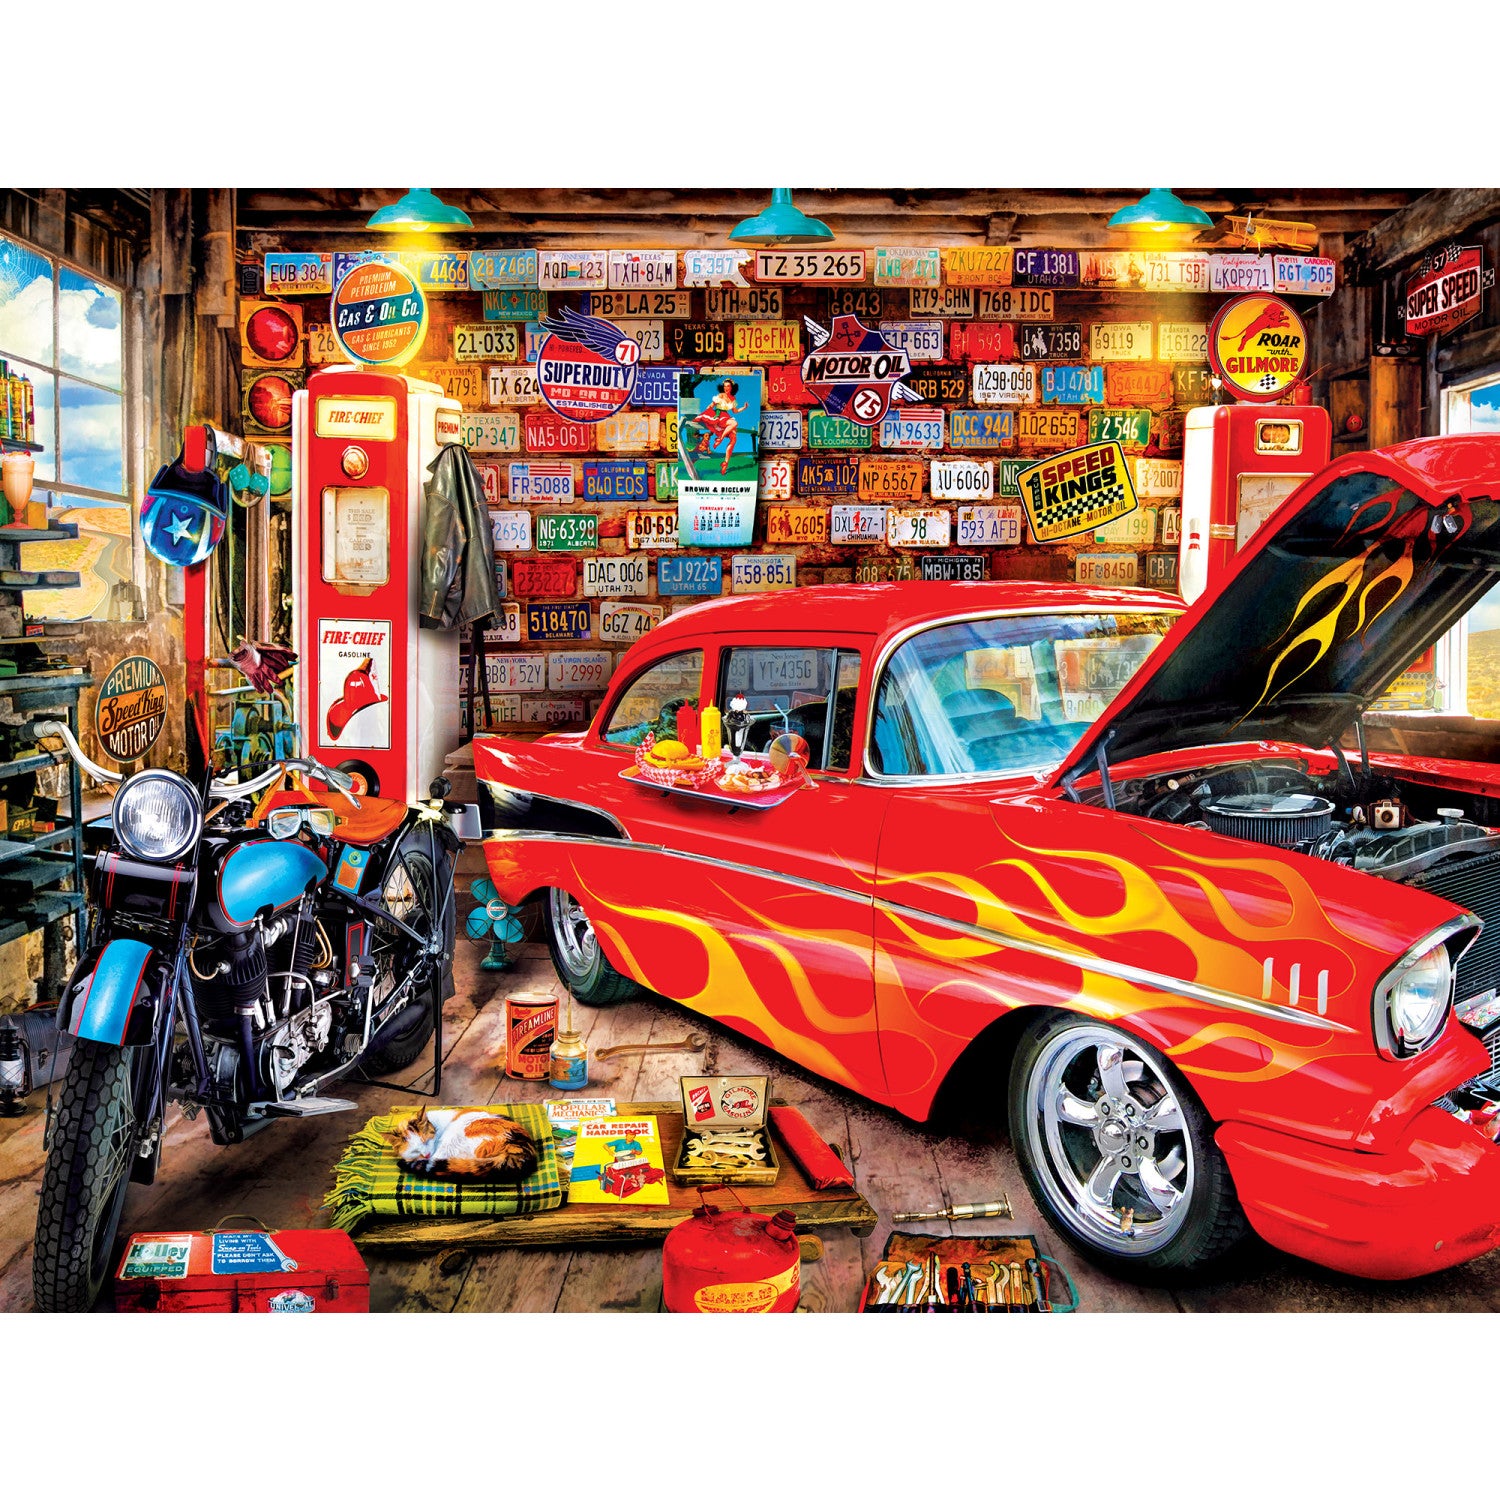 Garagem retro - puzzle online